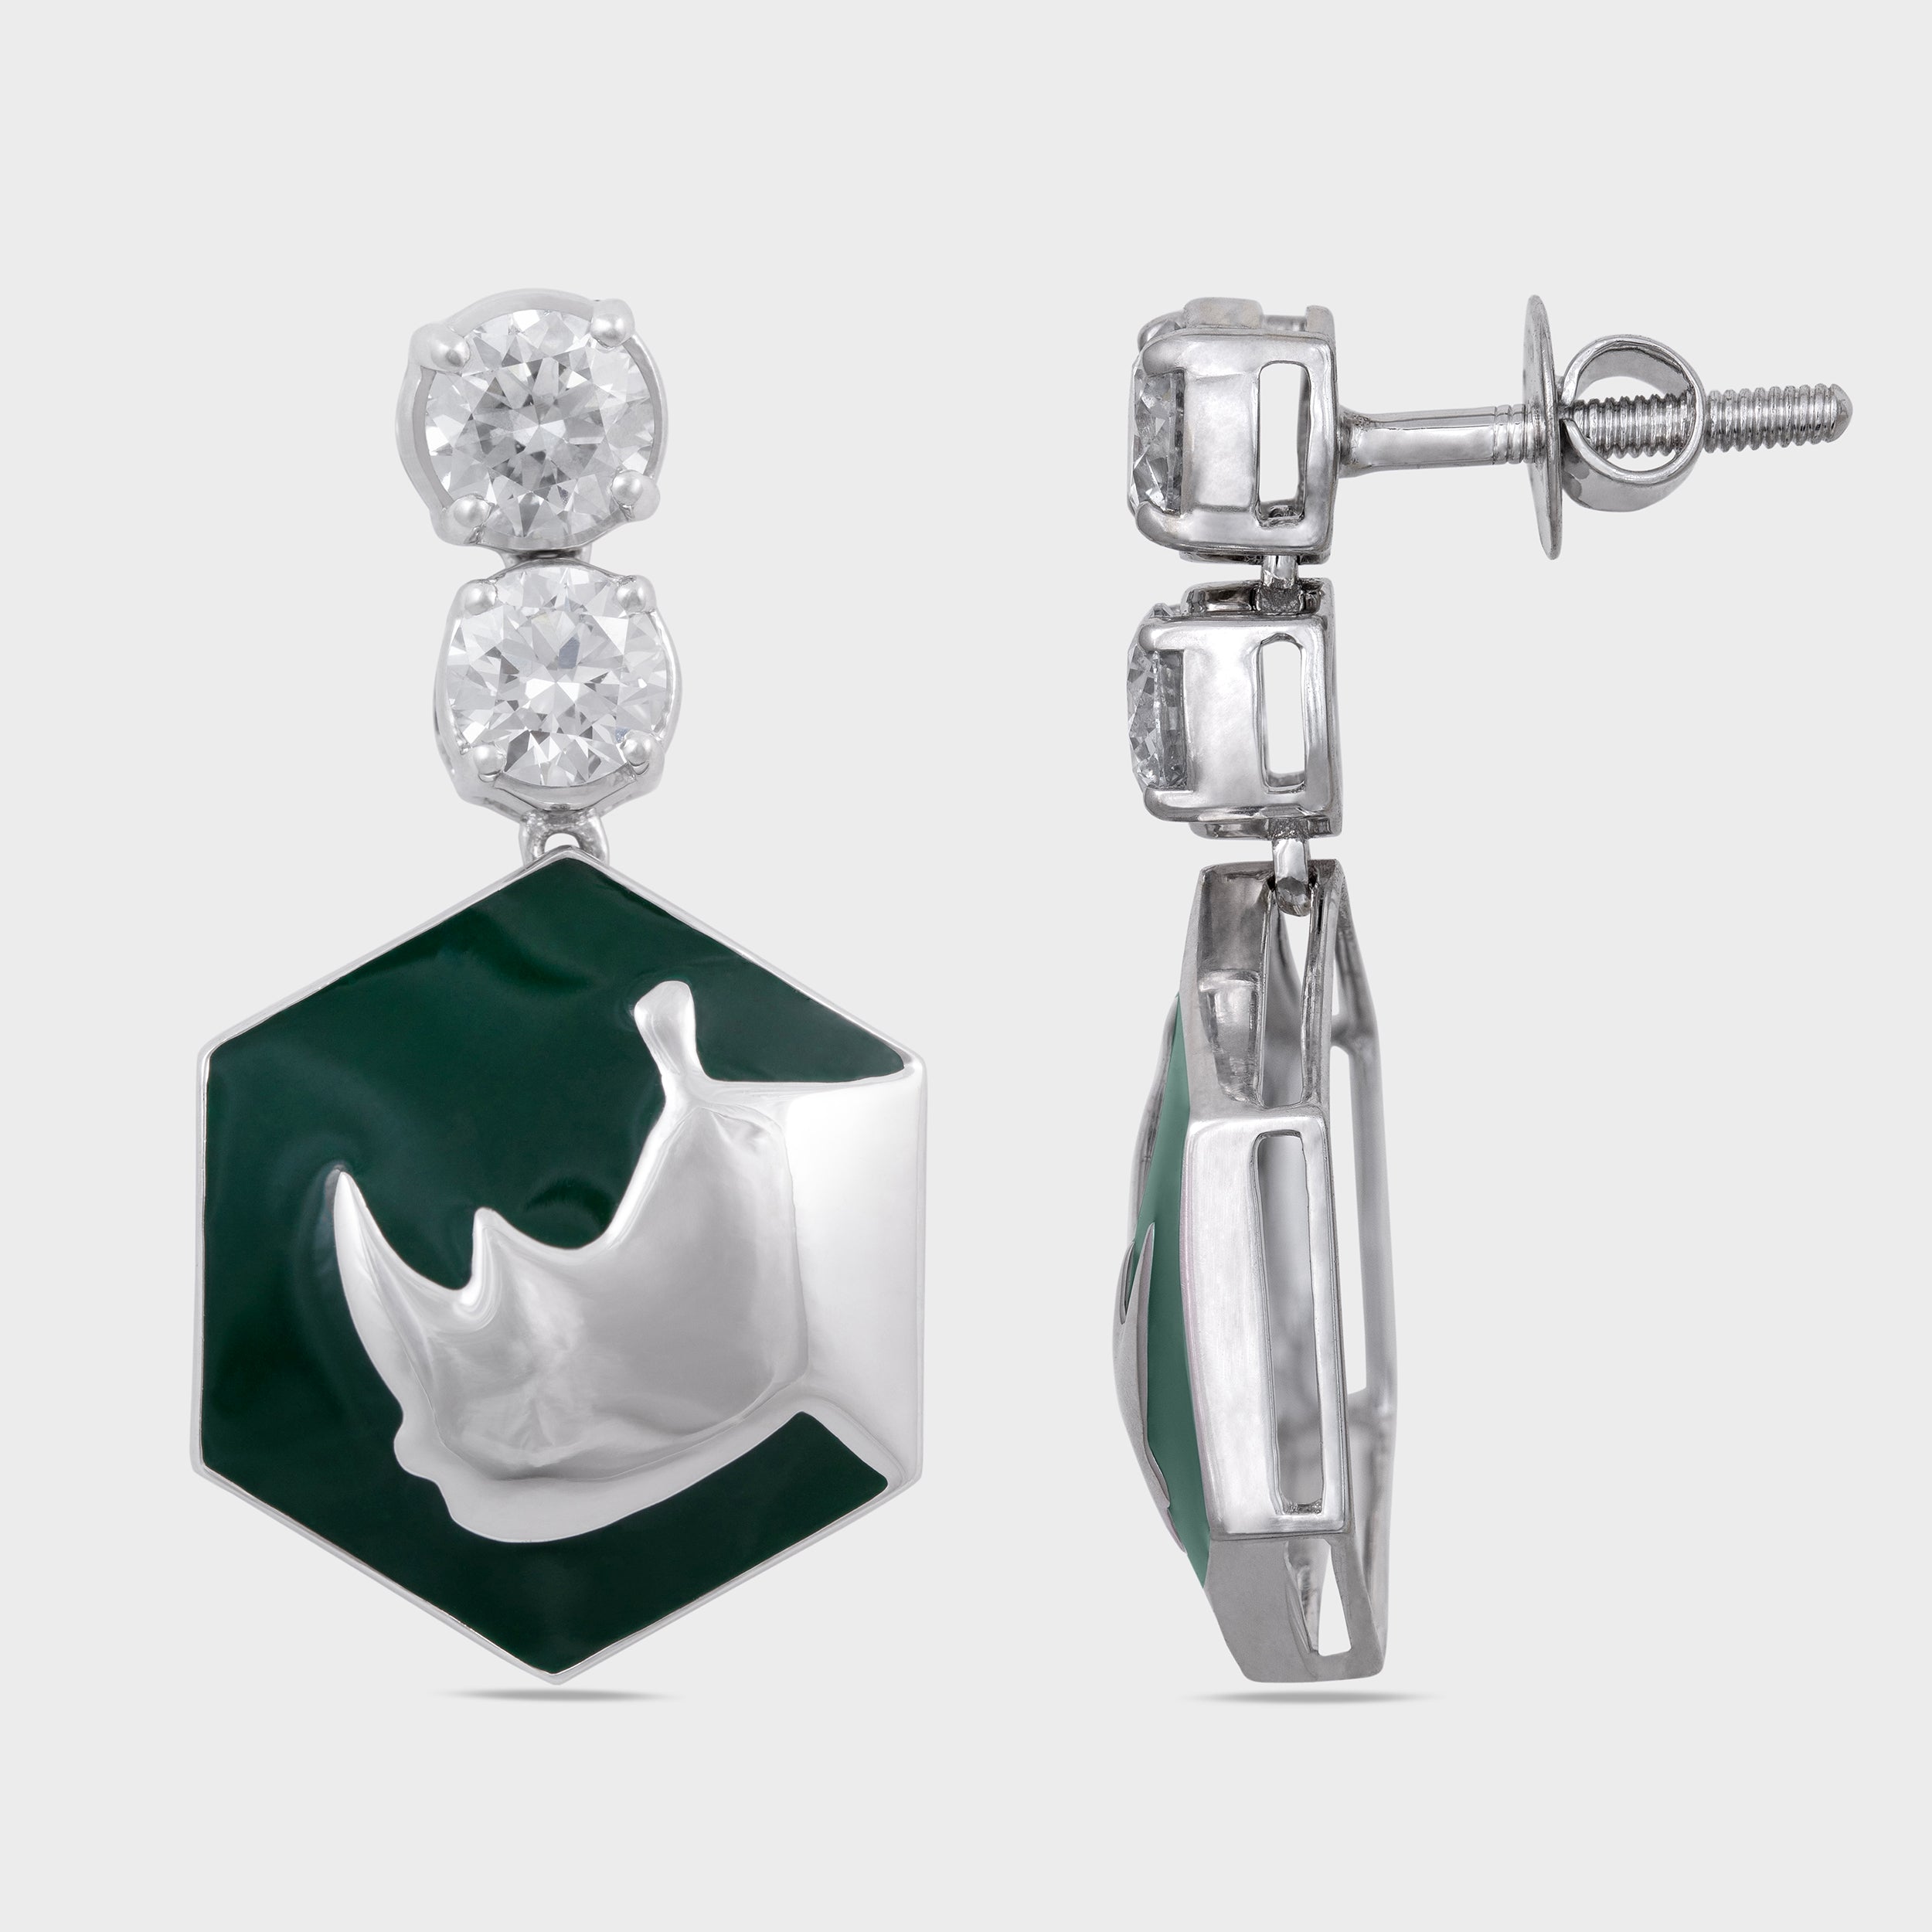 Rhinoceros Silhouette Diamond Drop Earrings | SKU: 0019510613